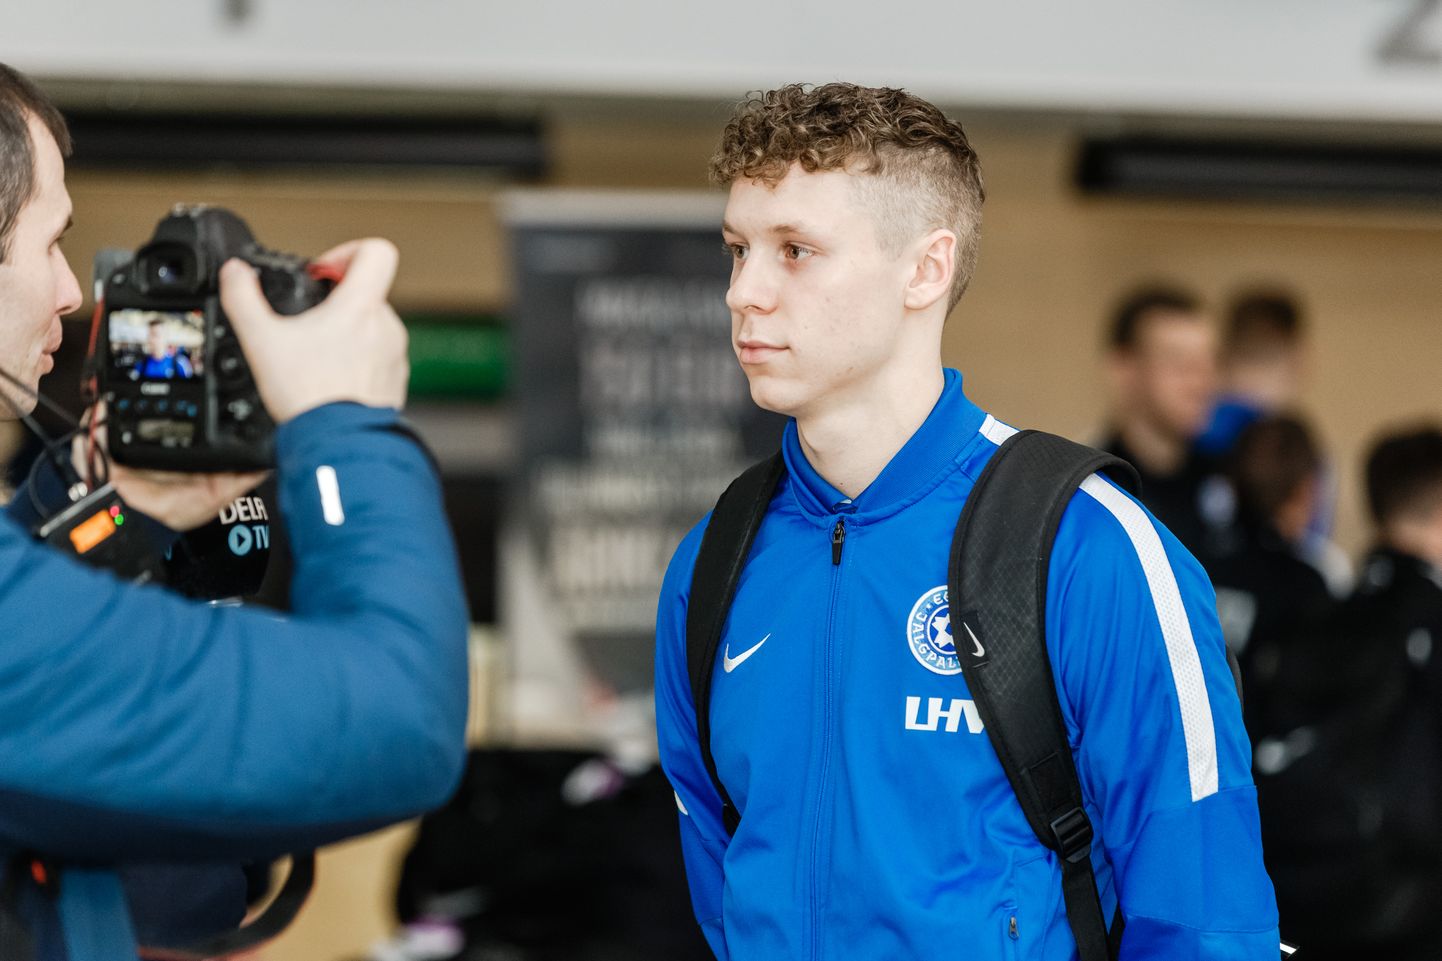 Eesti U23 jalgpallikoondise poolkaitsja Markus Poom